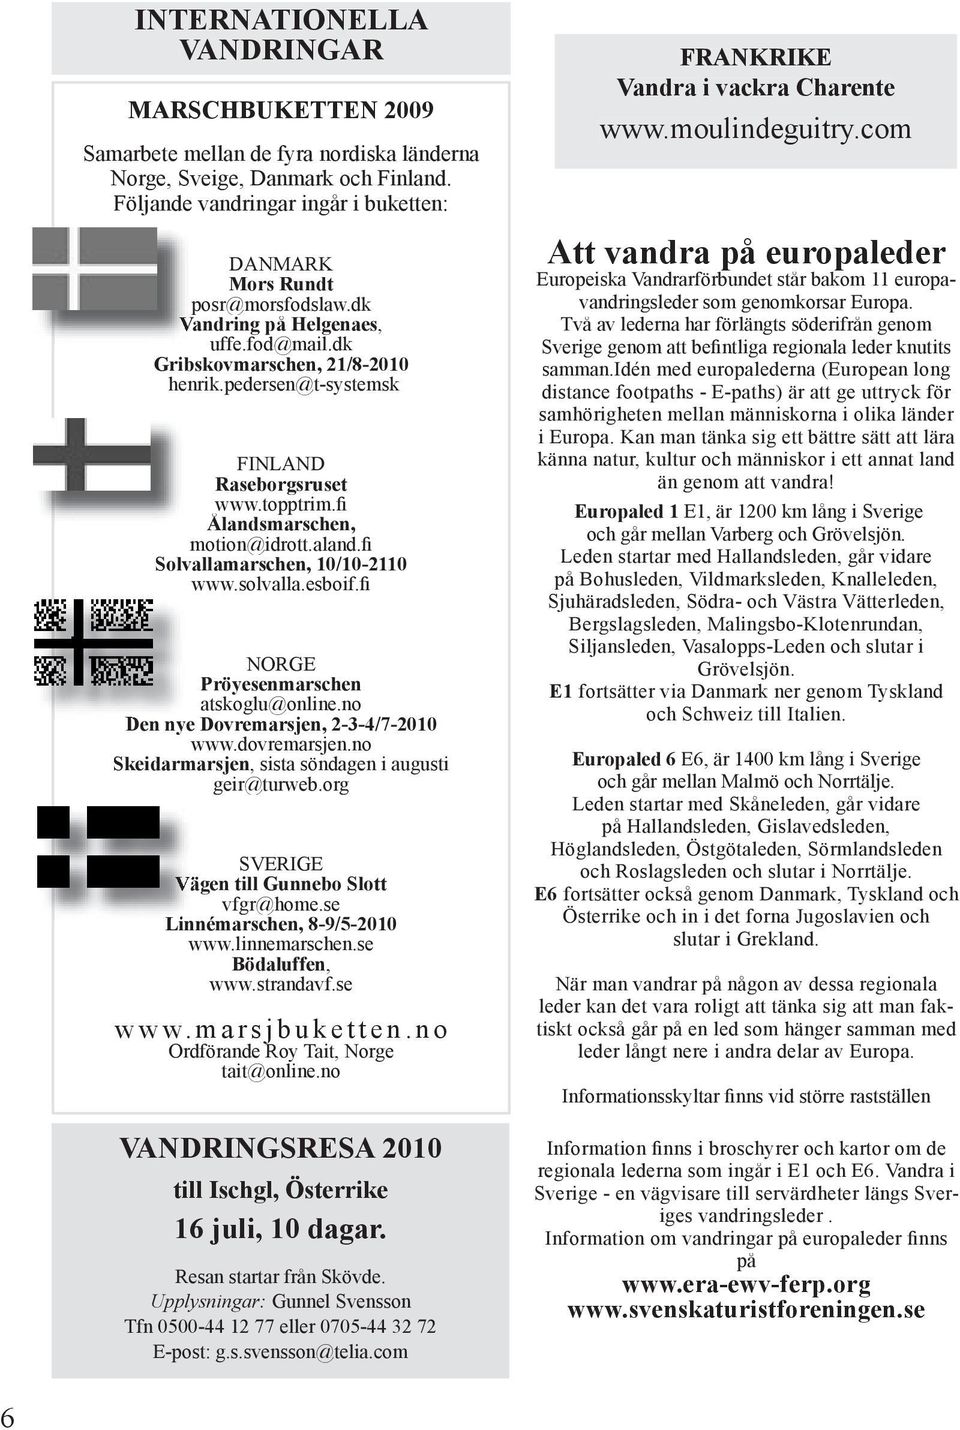 fi Solvallamarschen, 10/10-2110 www.solvalla.esboif.fi NORGE Pröyesenmarschen atskoglu@online.no Den nye Dovremarsjen, 2-3-4/7-2010 www.dovremarsjen.